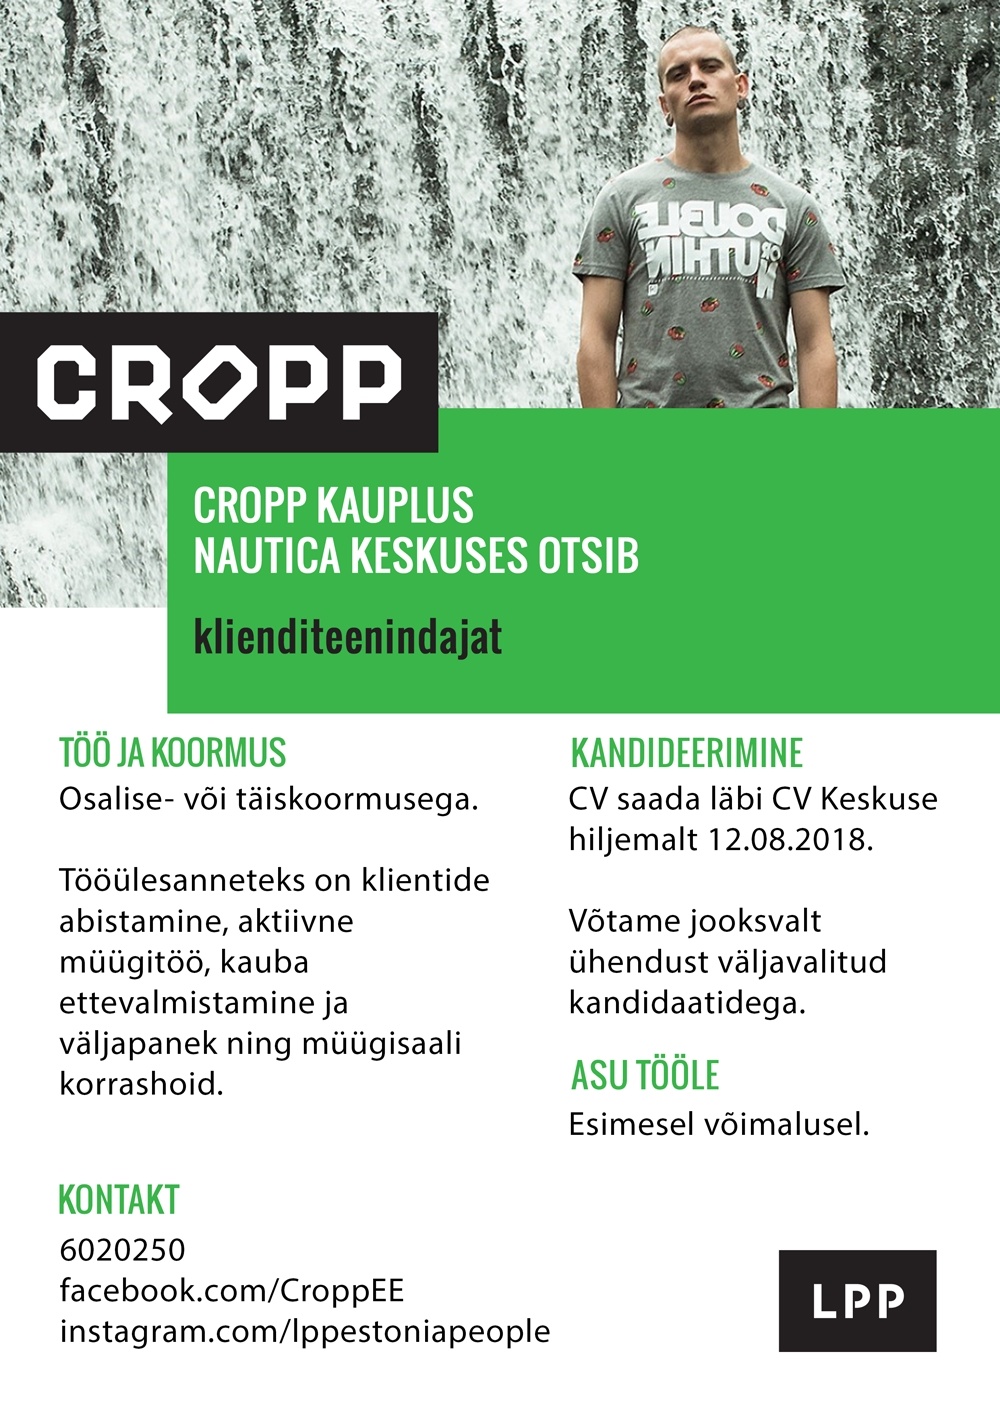 LPP Estonia OÜ Klienditeenindaja (täis- ja osaline koormus) CROPP kauplusesse Nautica keskuses